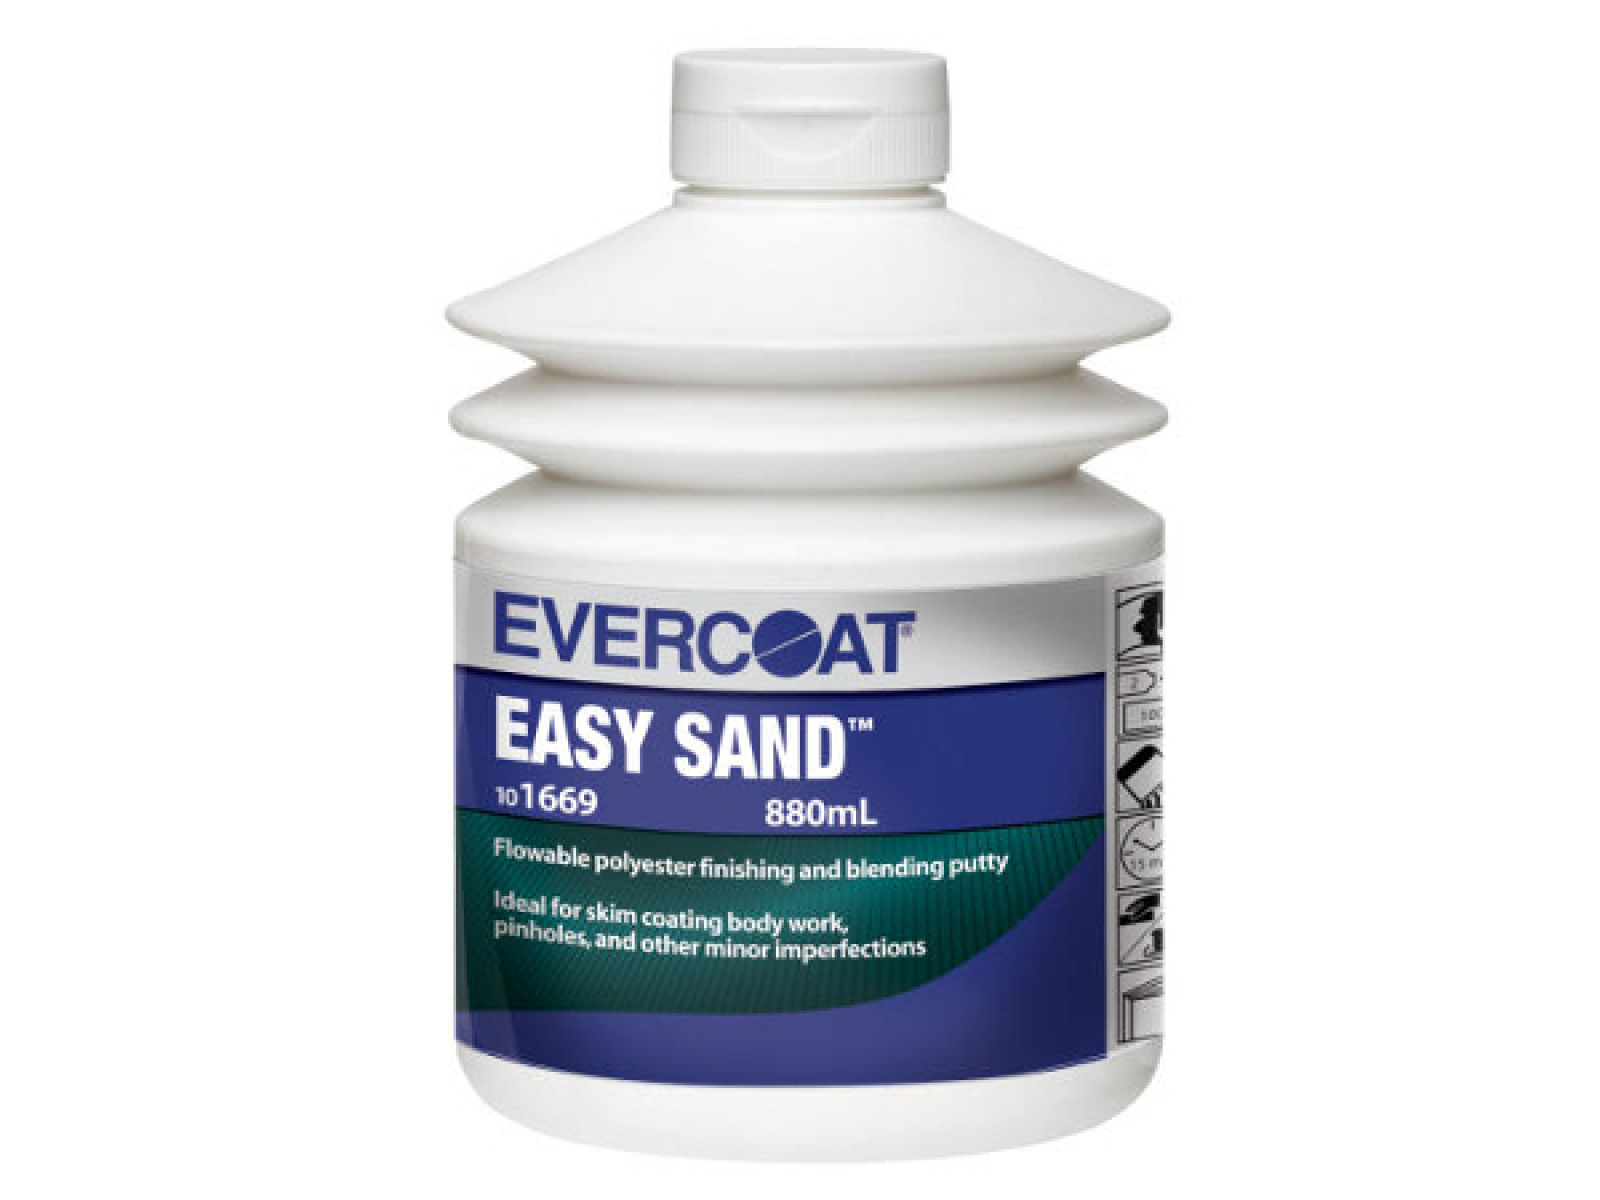 EVERCOAT Easy Sand Polyester Feinspachtel und Porenfüller mit Härter 880ml